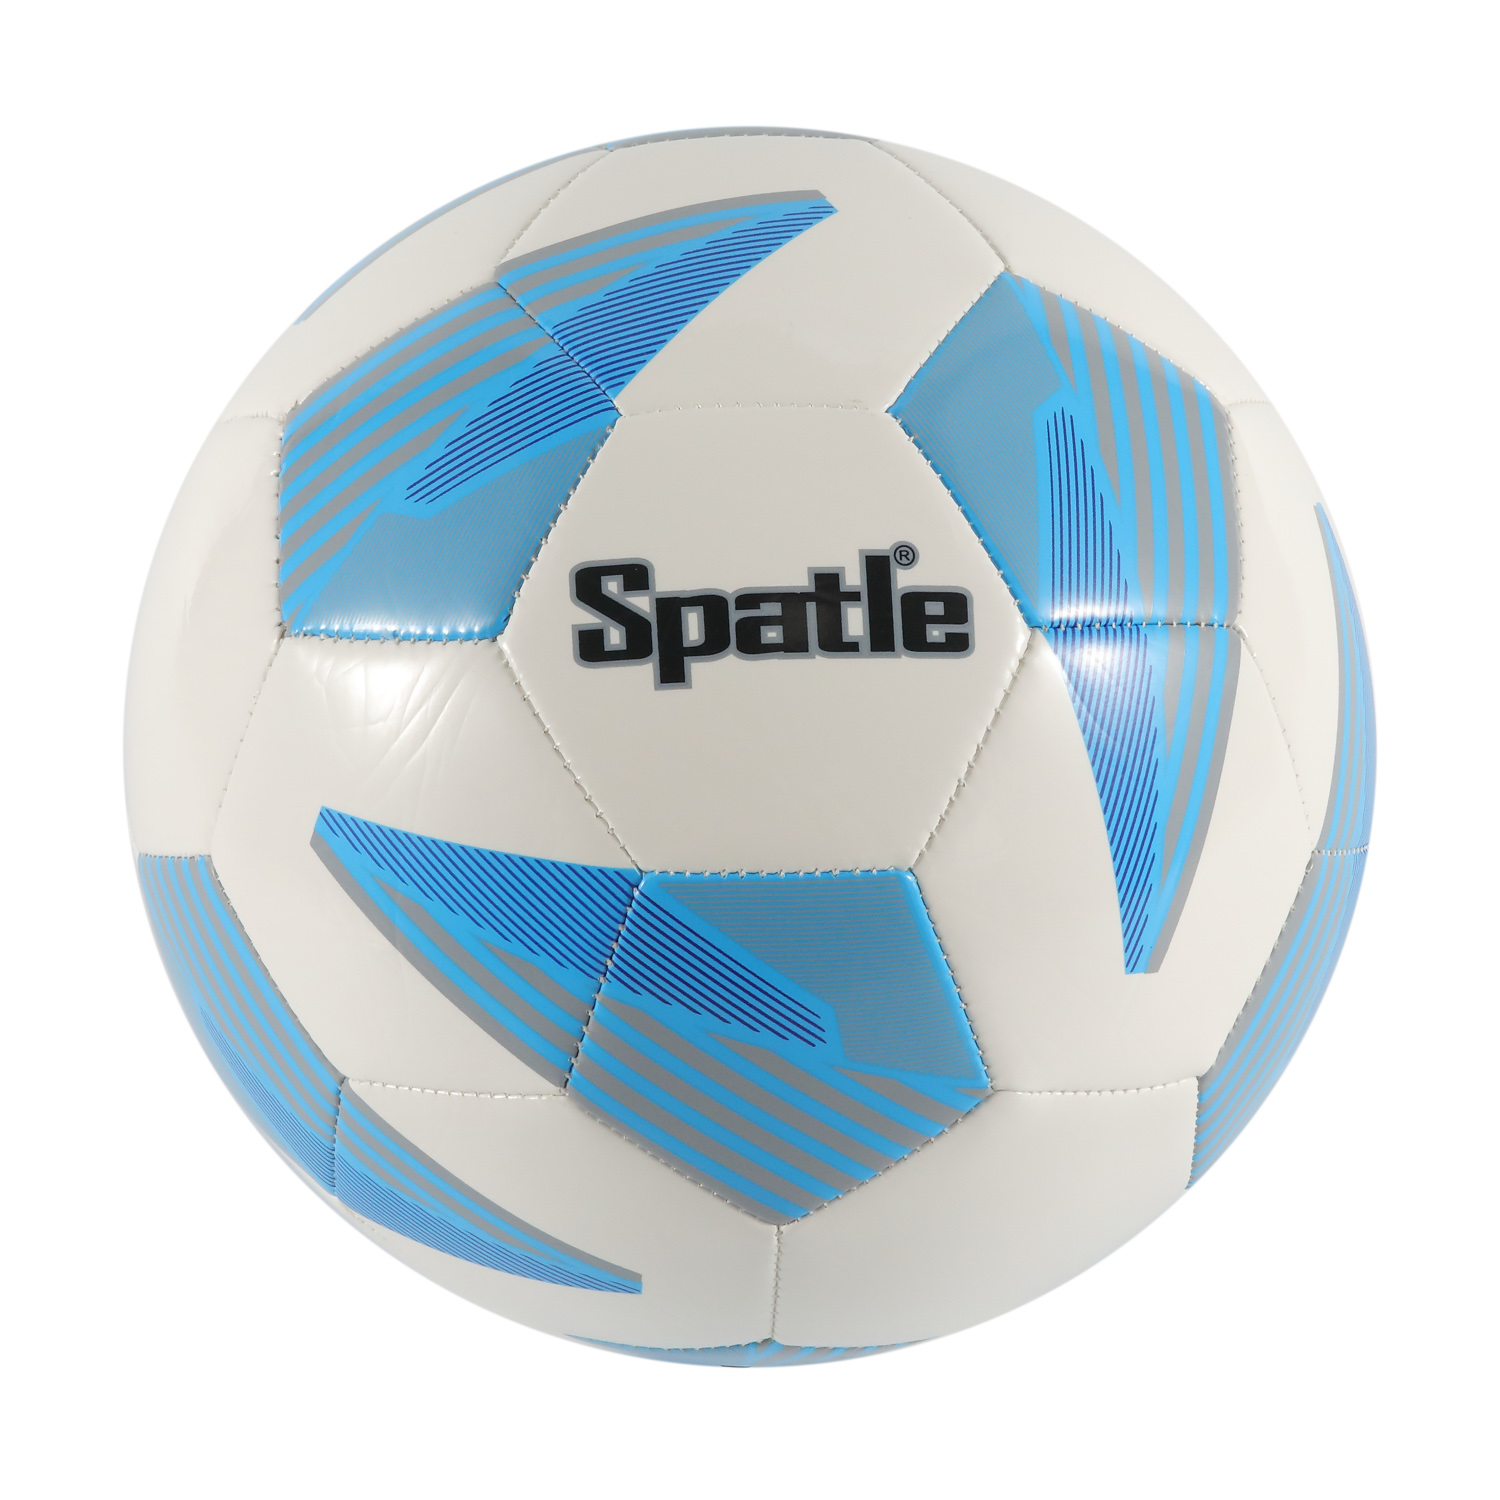 Fußball-Ball-Fußball-Fußball-Großhandelsbenutzerdefinierte Größe 4 Match-Fußball-Fußball